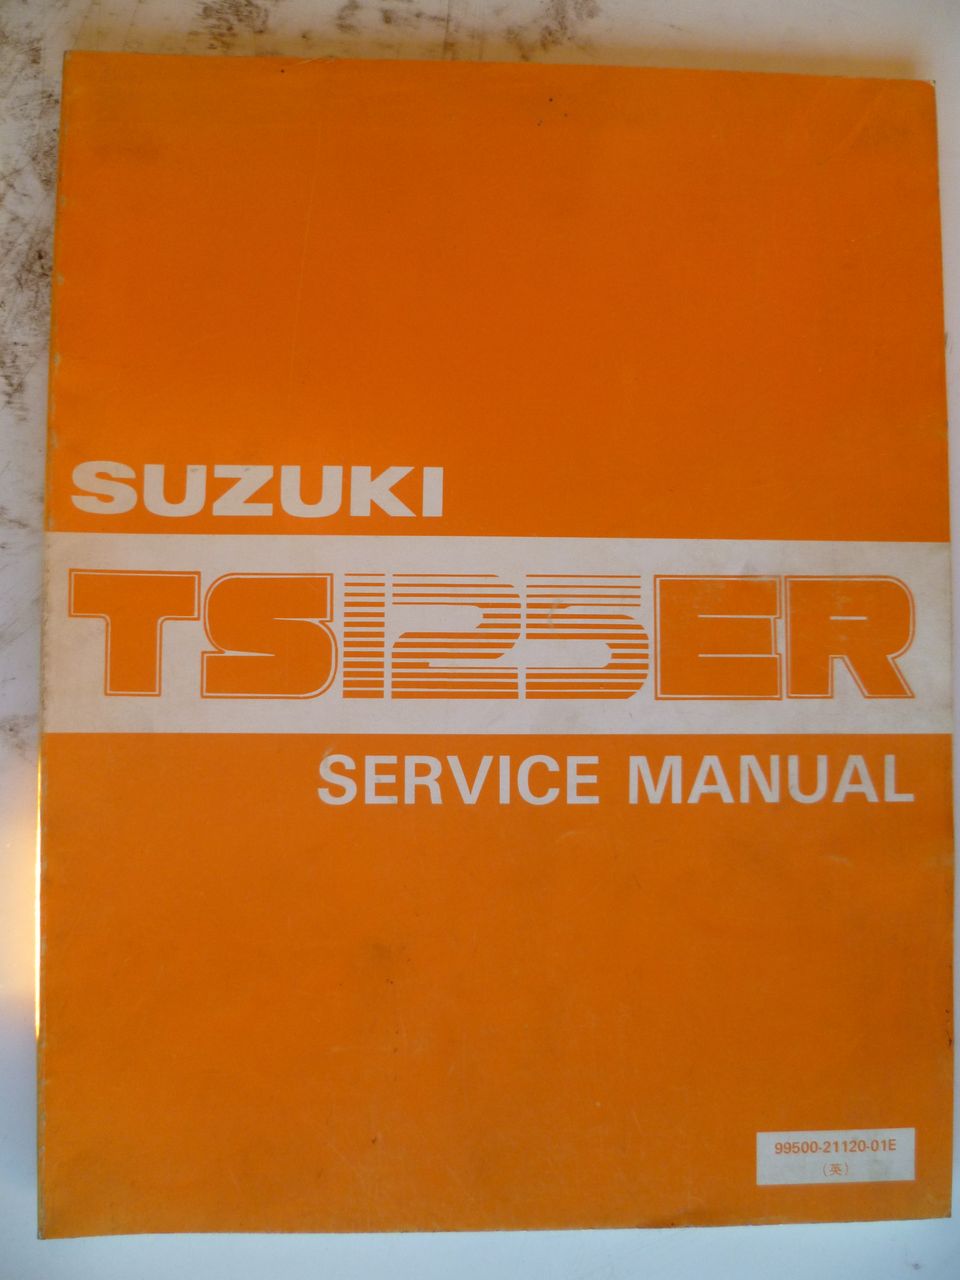 Suzuki TS125 ER korjauskäsikirja 1983